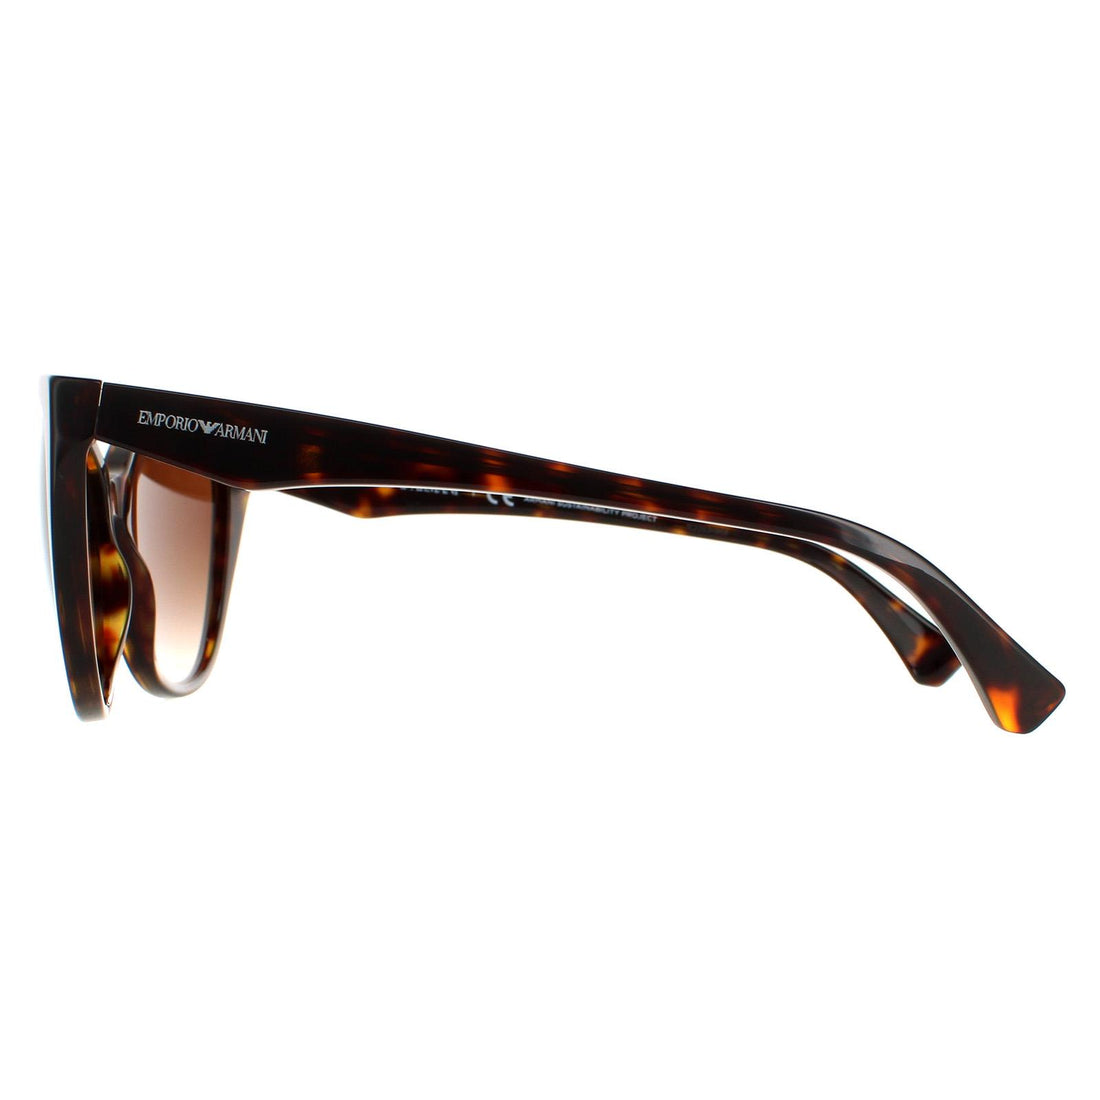 Emporio Armani EA4162 Sunglasses